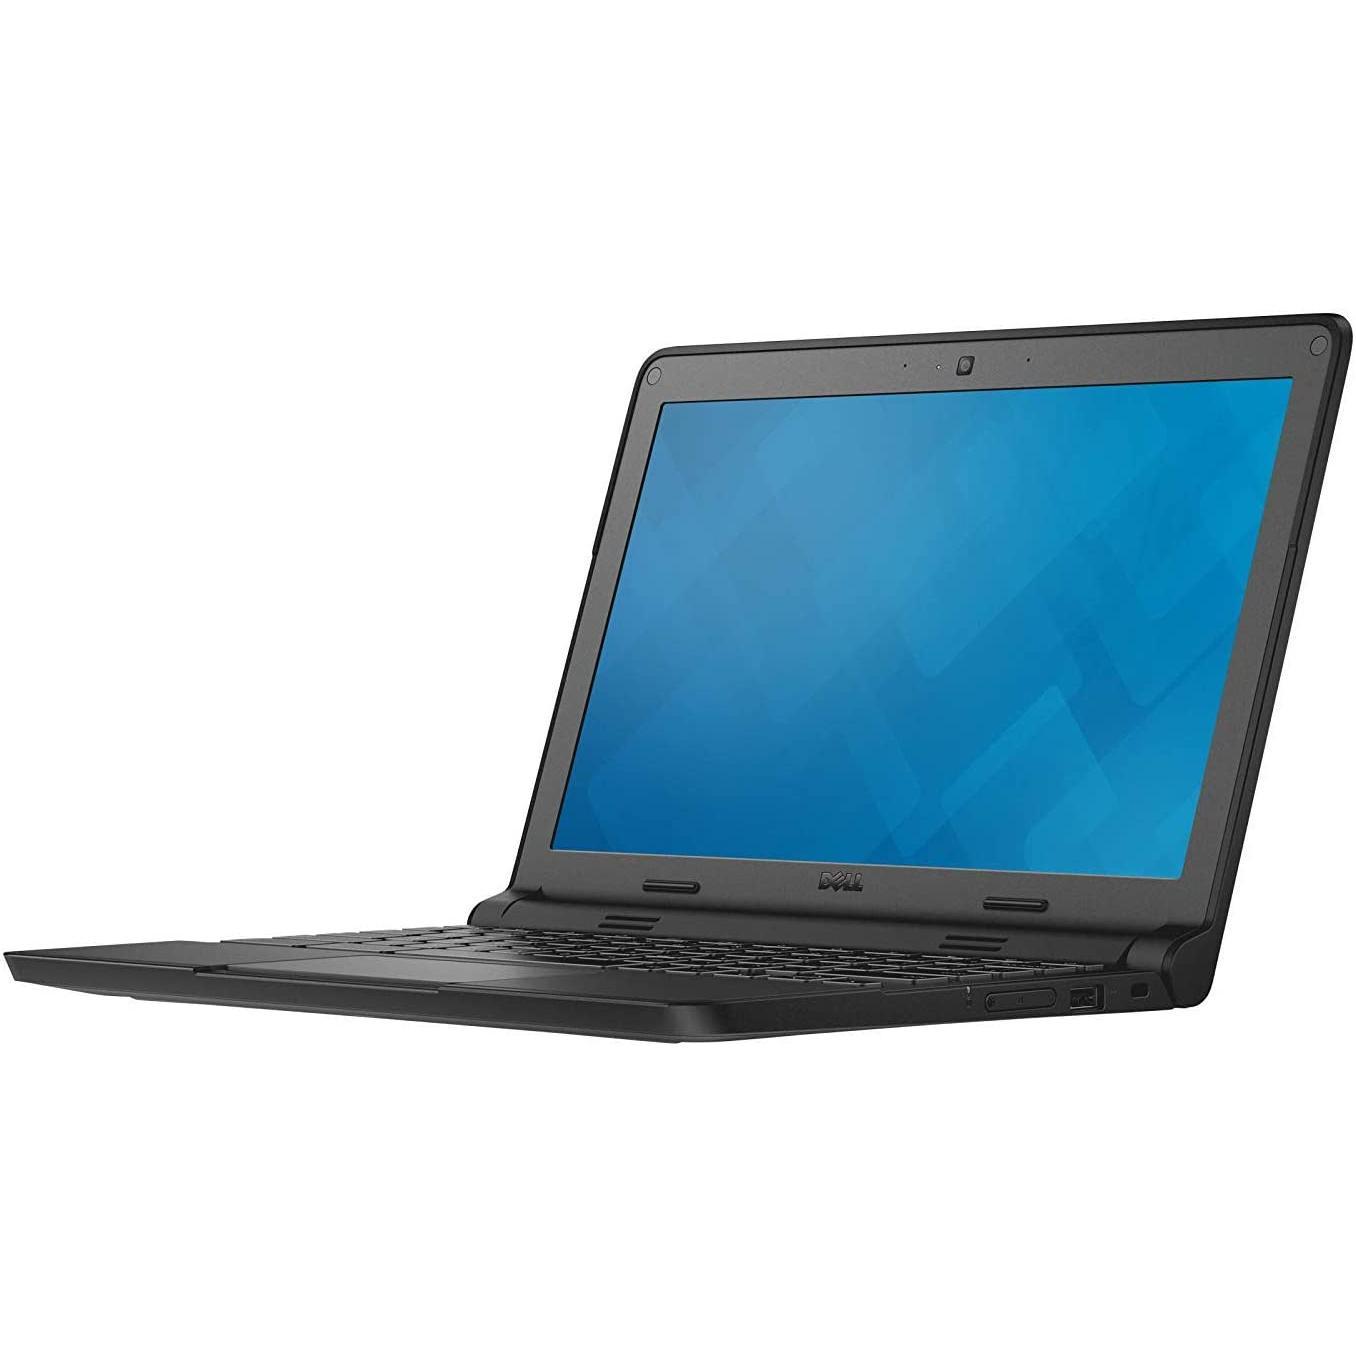 Dell Chromebook 11 P22T 11.6 Intel Celeron N2840 2.16 GHz 4GB RAM, 16GB SSD